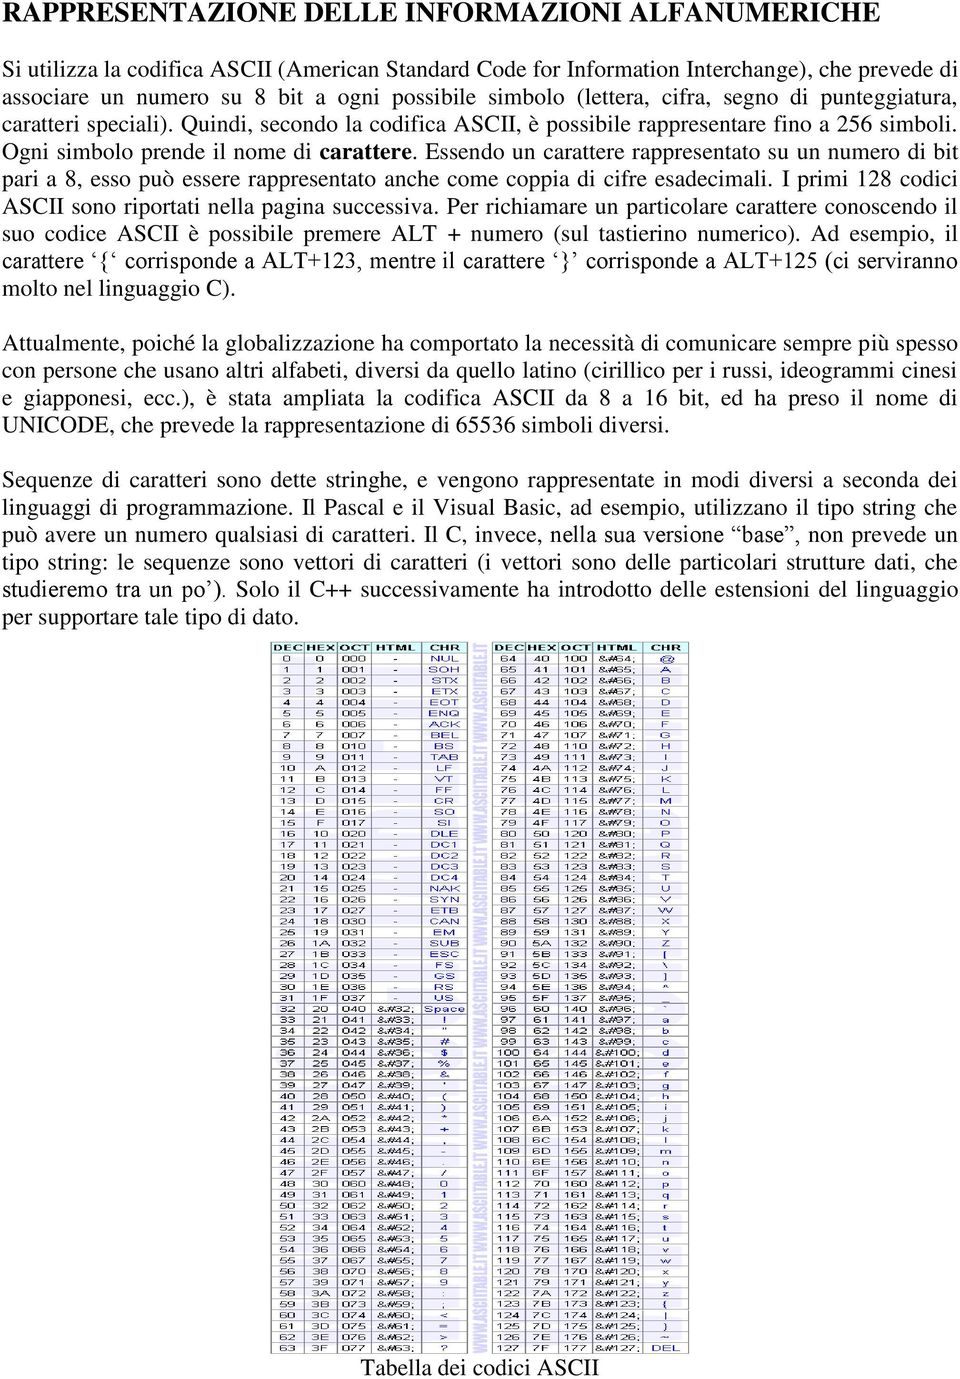 Essendo un carattere rappresentato su un numero di bit pari a 8, esso può essere rappresentato anche come coppia di cifre esadecimali. I primi 128 codici ASCII sono riportati nella pagina successiva.